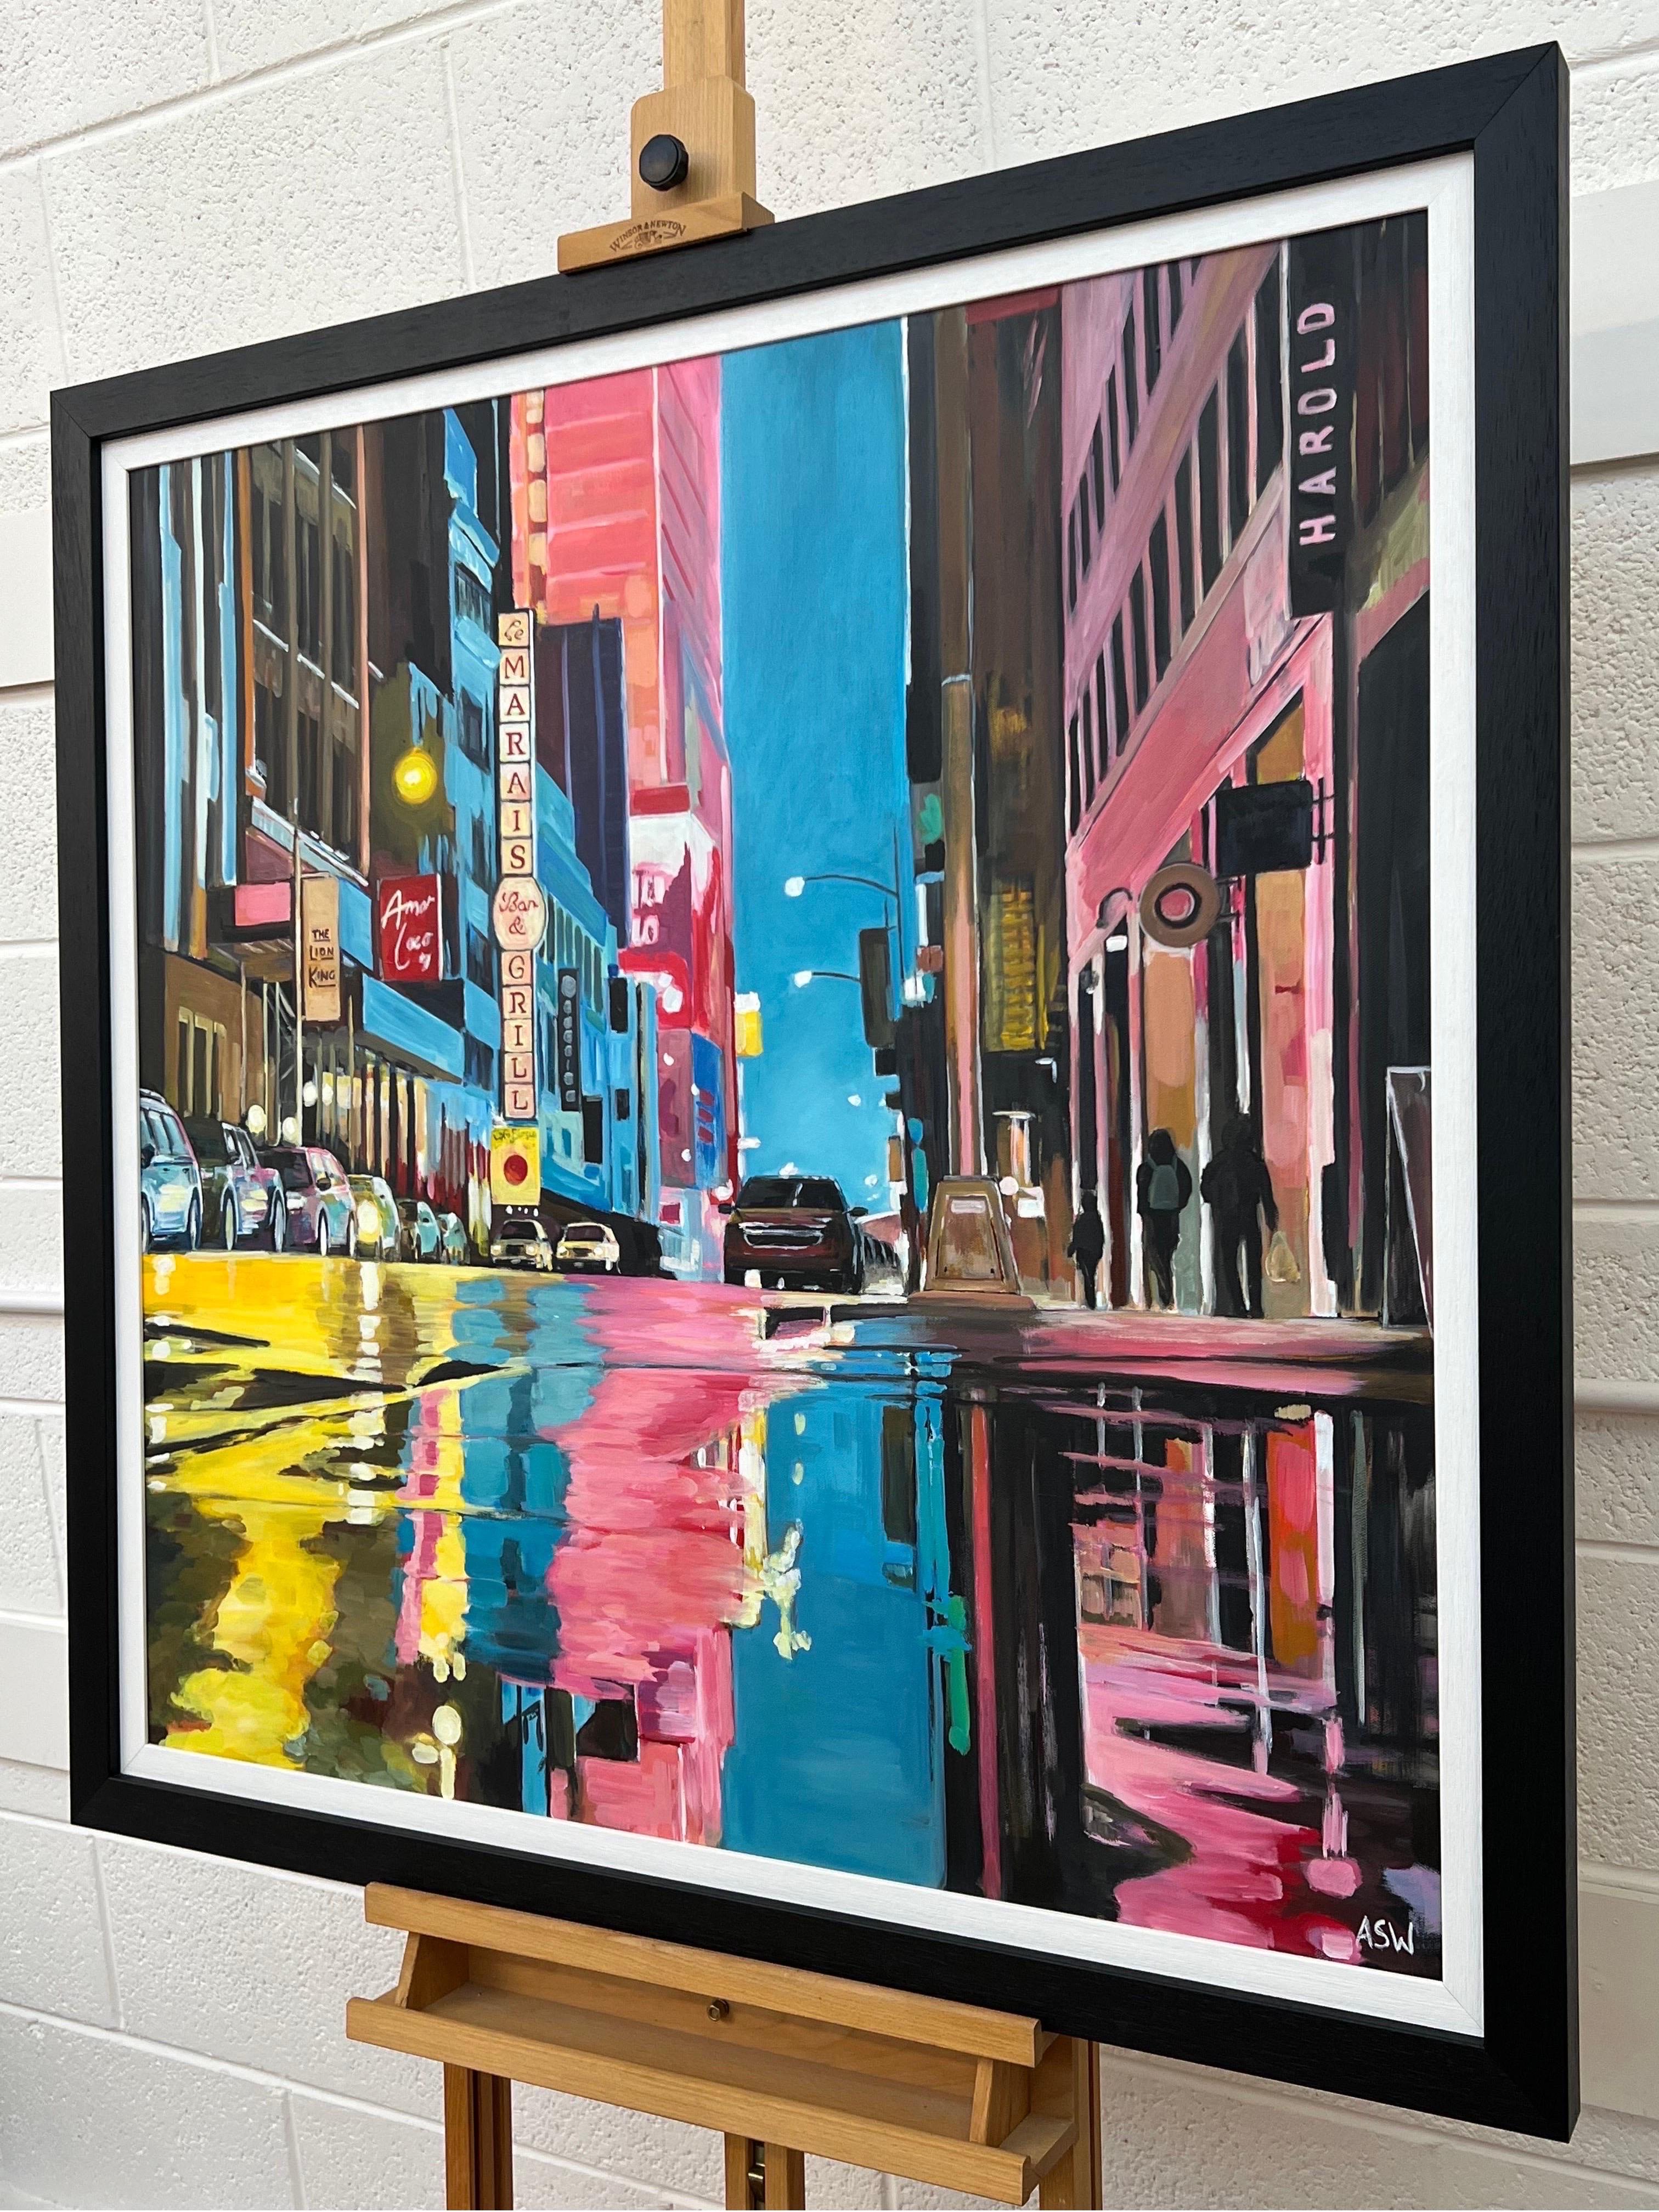 Peinture originale d'une scène contemporaine de la ville de New York après la pluie, avec des voitures et des personnages, réalisée par l'artiste britannique Angela Wakefield. Il s'agit d'une œuvre majeure qui s'inscrit dans la continuité de sa